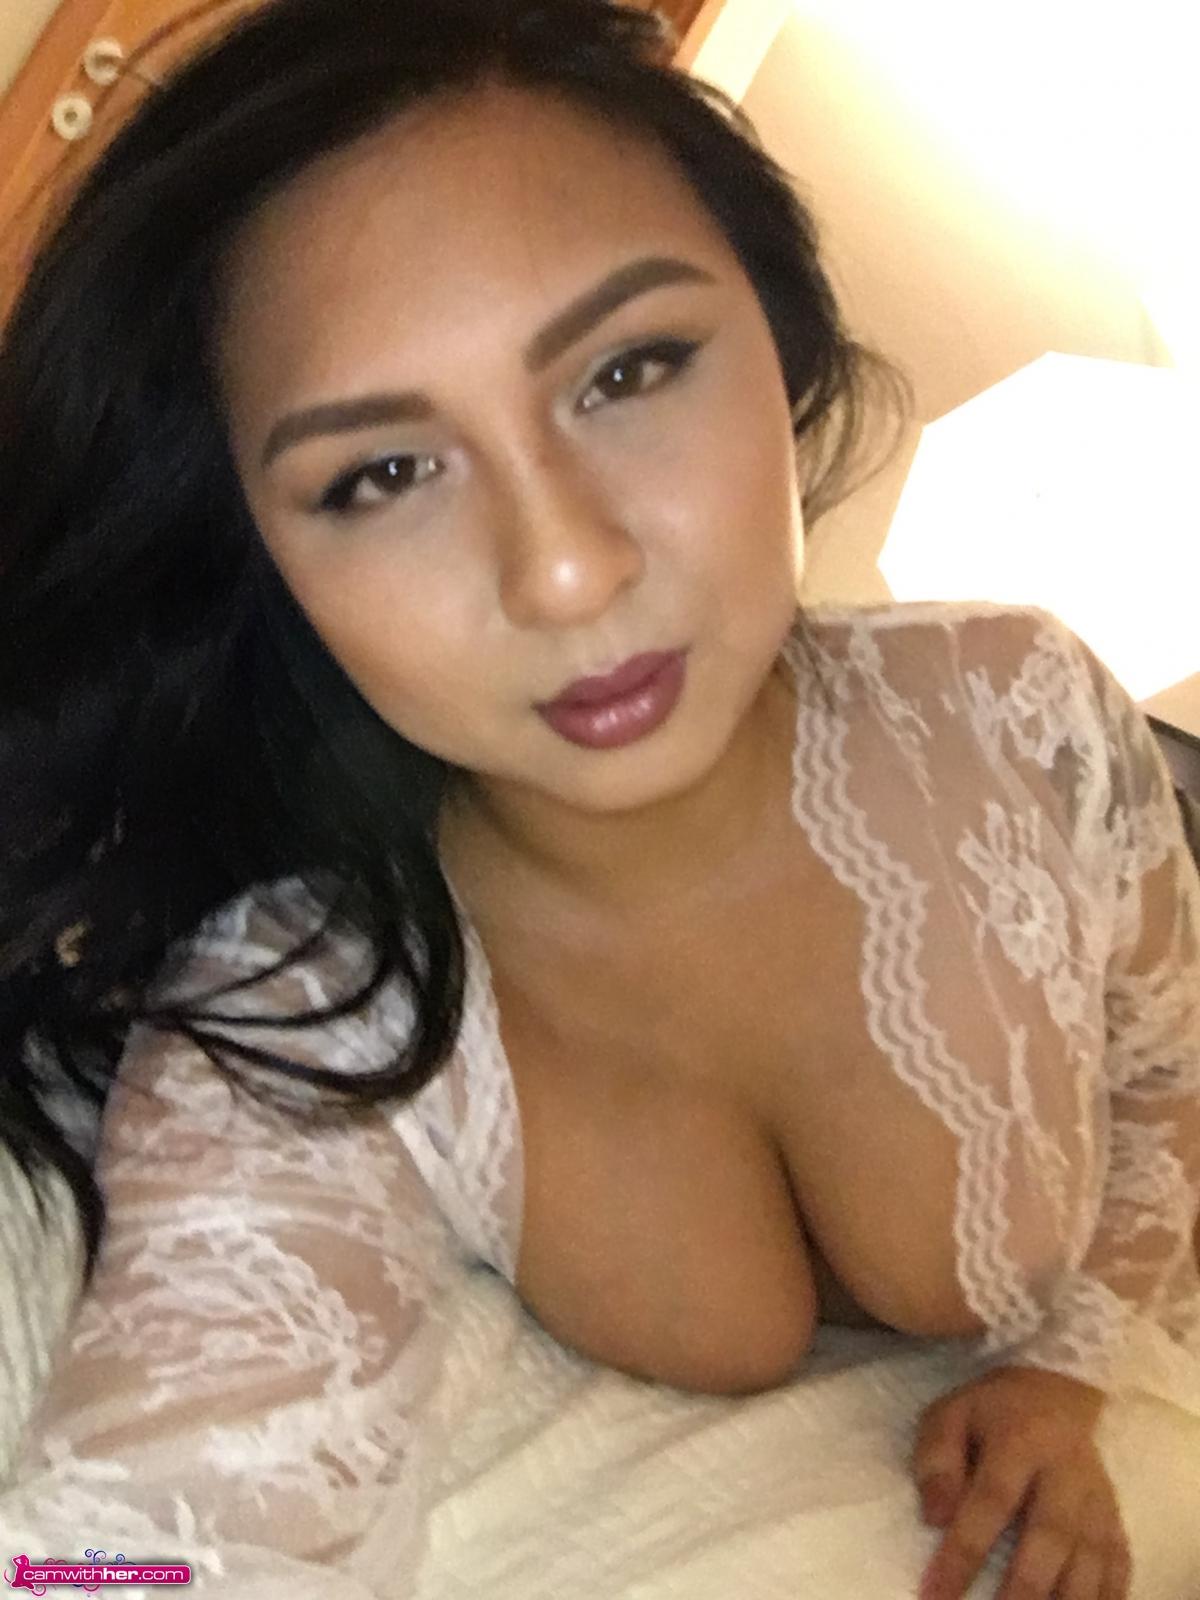 Brunette babe maxxine ruby nimmt einige selfies von ihrem heißen Körper im Bett
 #59438488